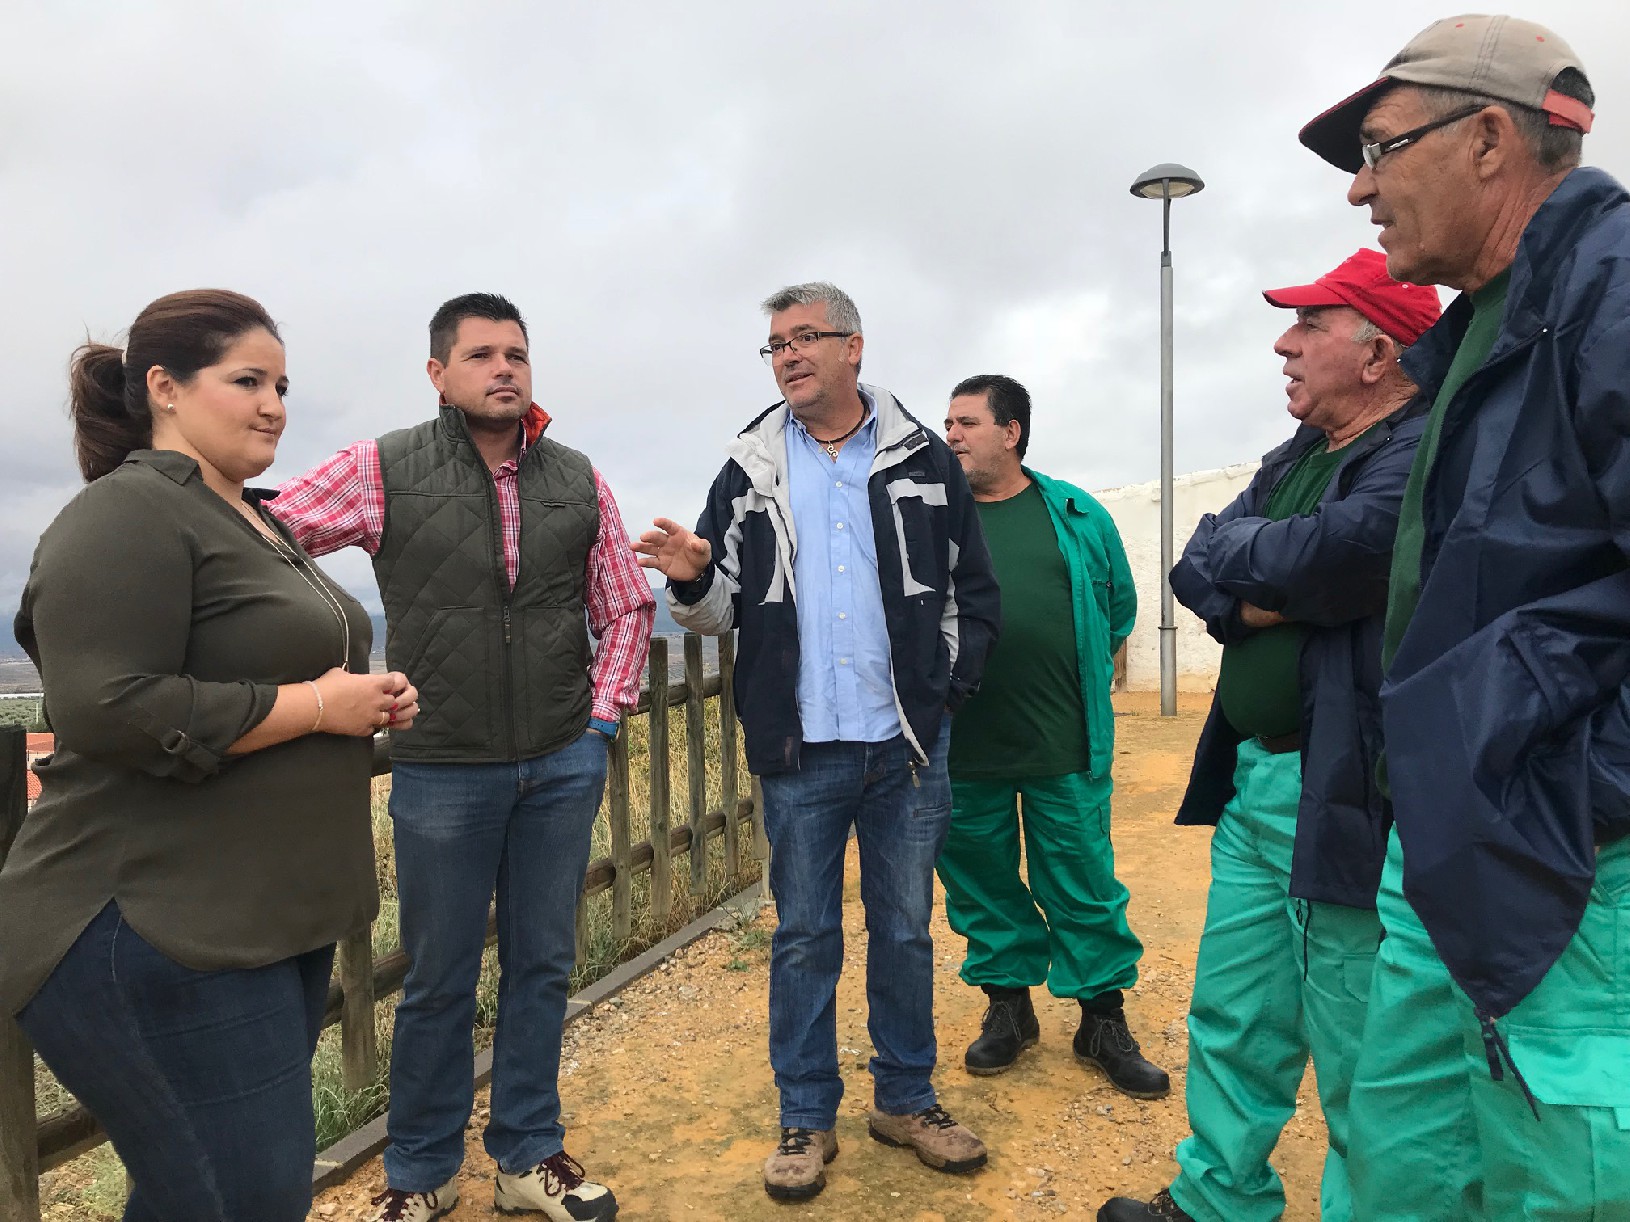 9 trabajadores mejoran las zonas verdes del mirador del depósito de La Paca gracias al Programa de Fomento del Empleo Agrario puesto en marcha por el Ayuntamiento 